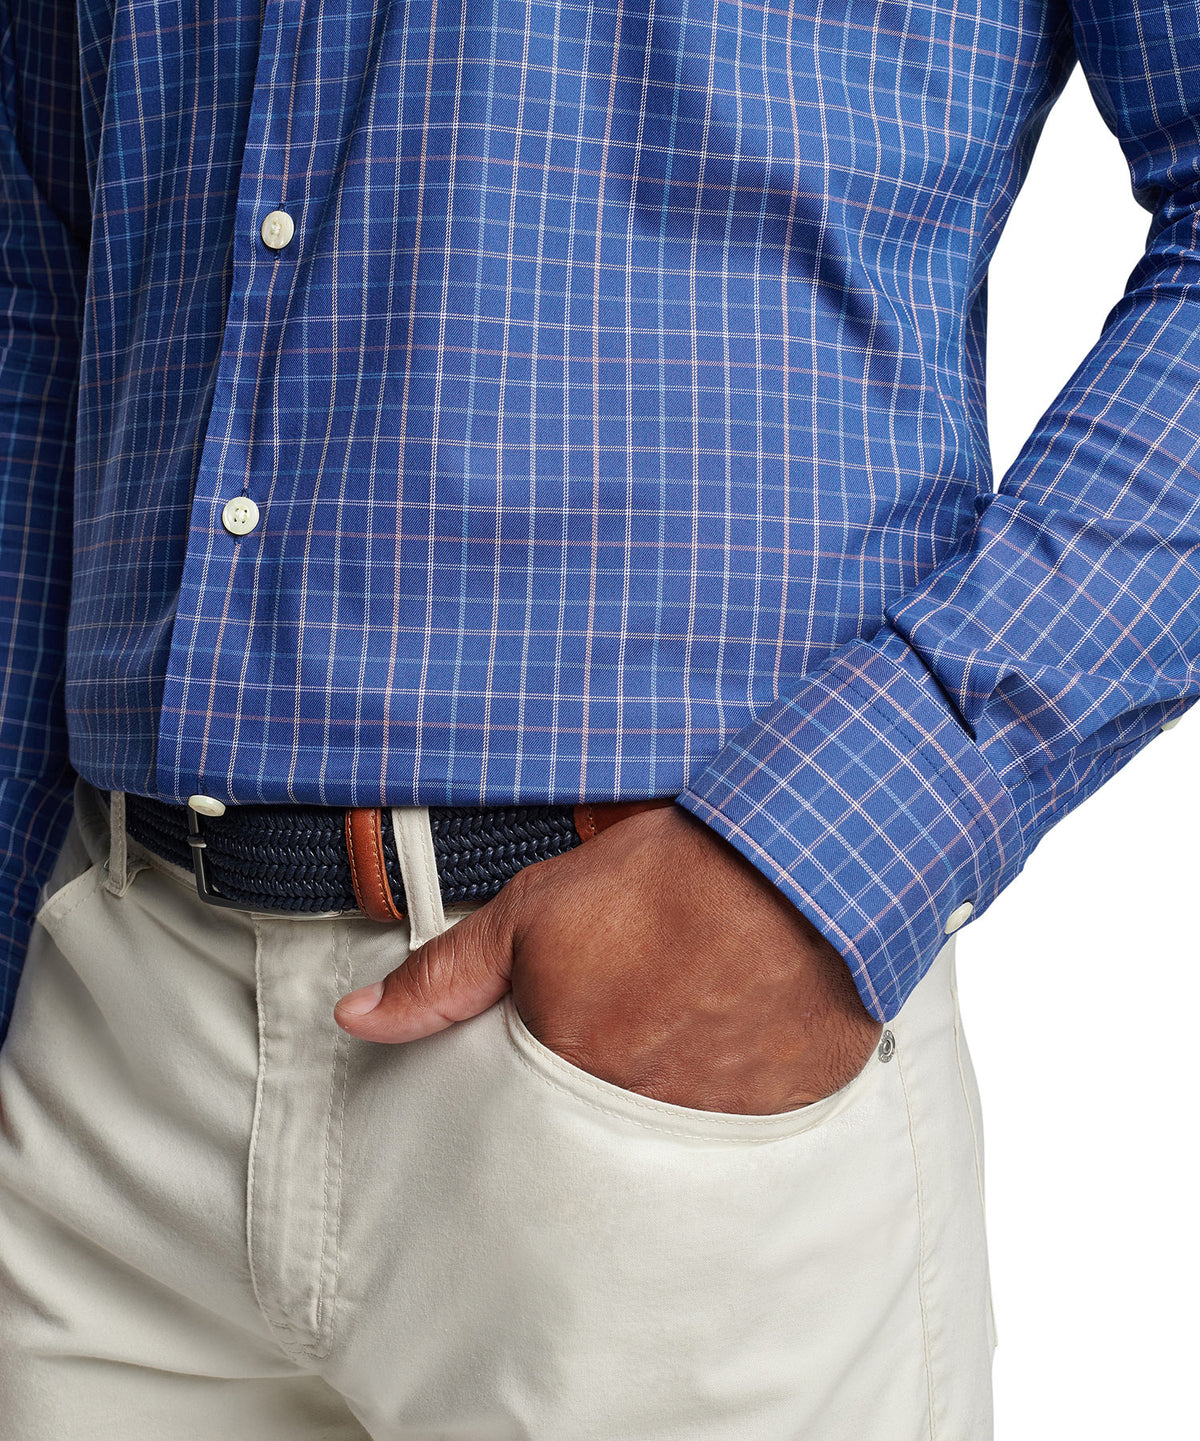 Peter Millar Long Sleeve Patton Button-Down Collar Patterned Sport Shirt, Big & Tall